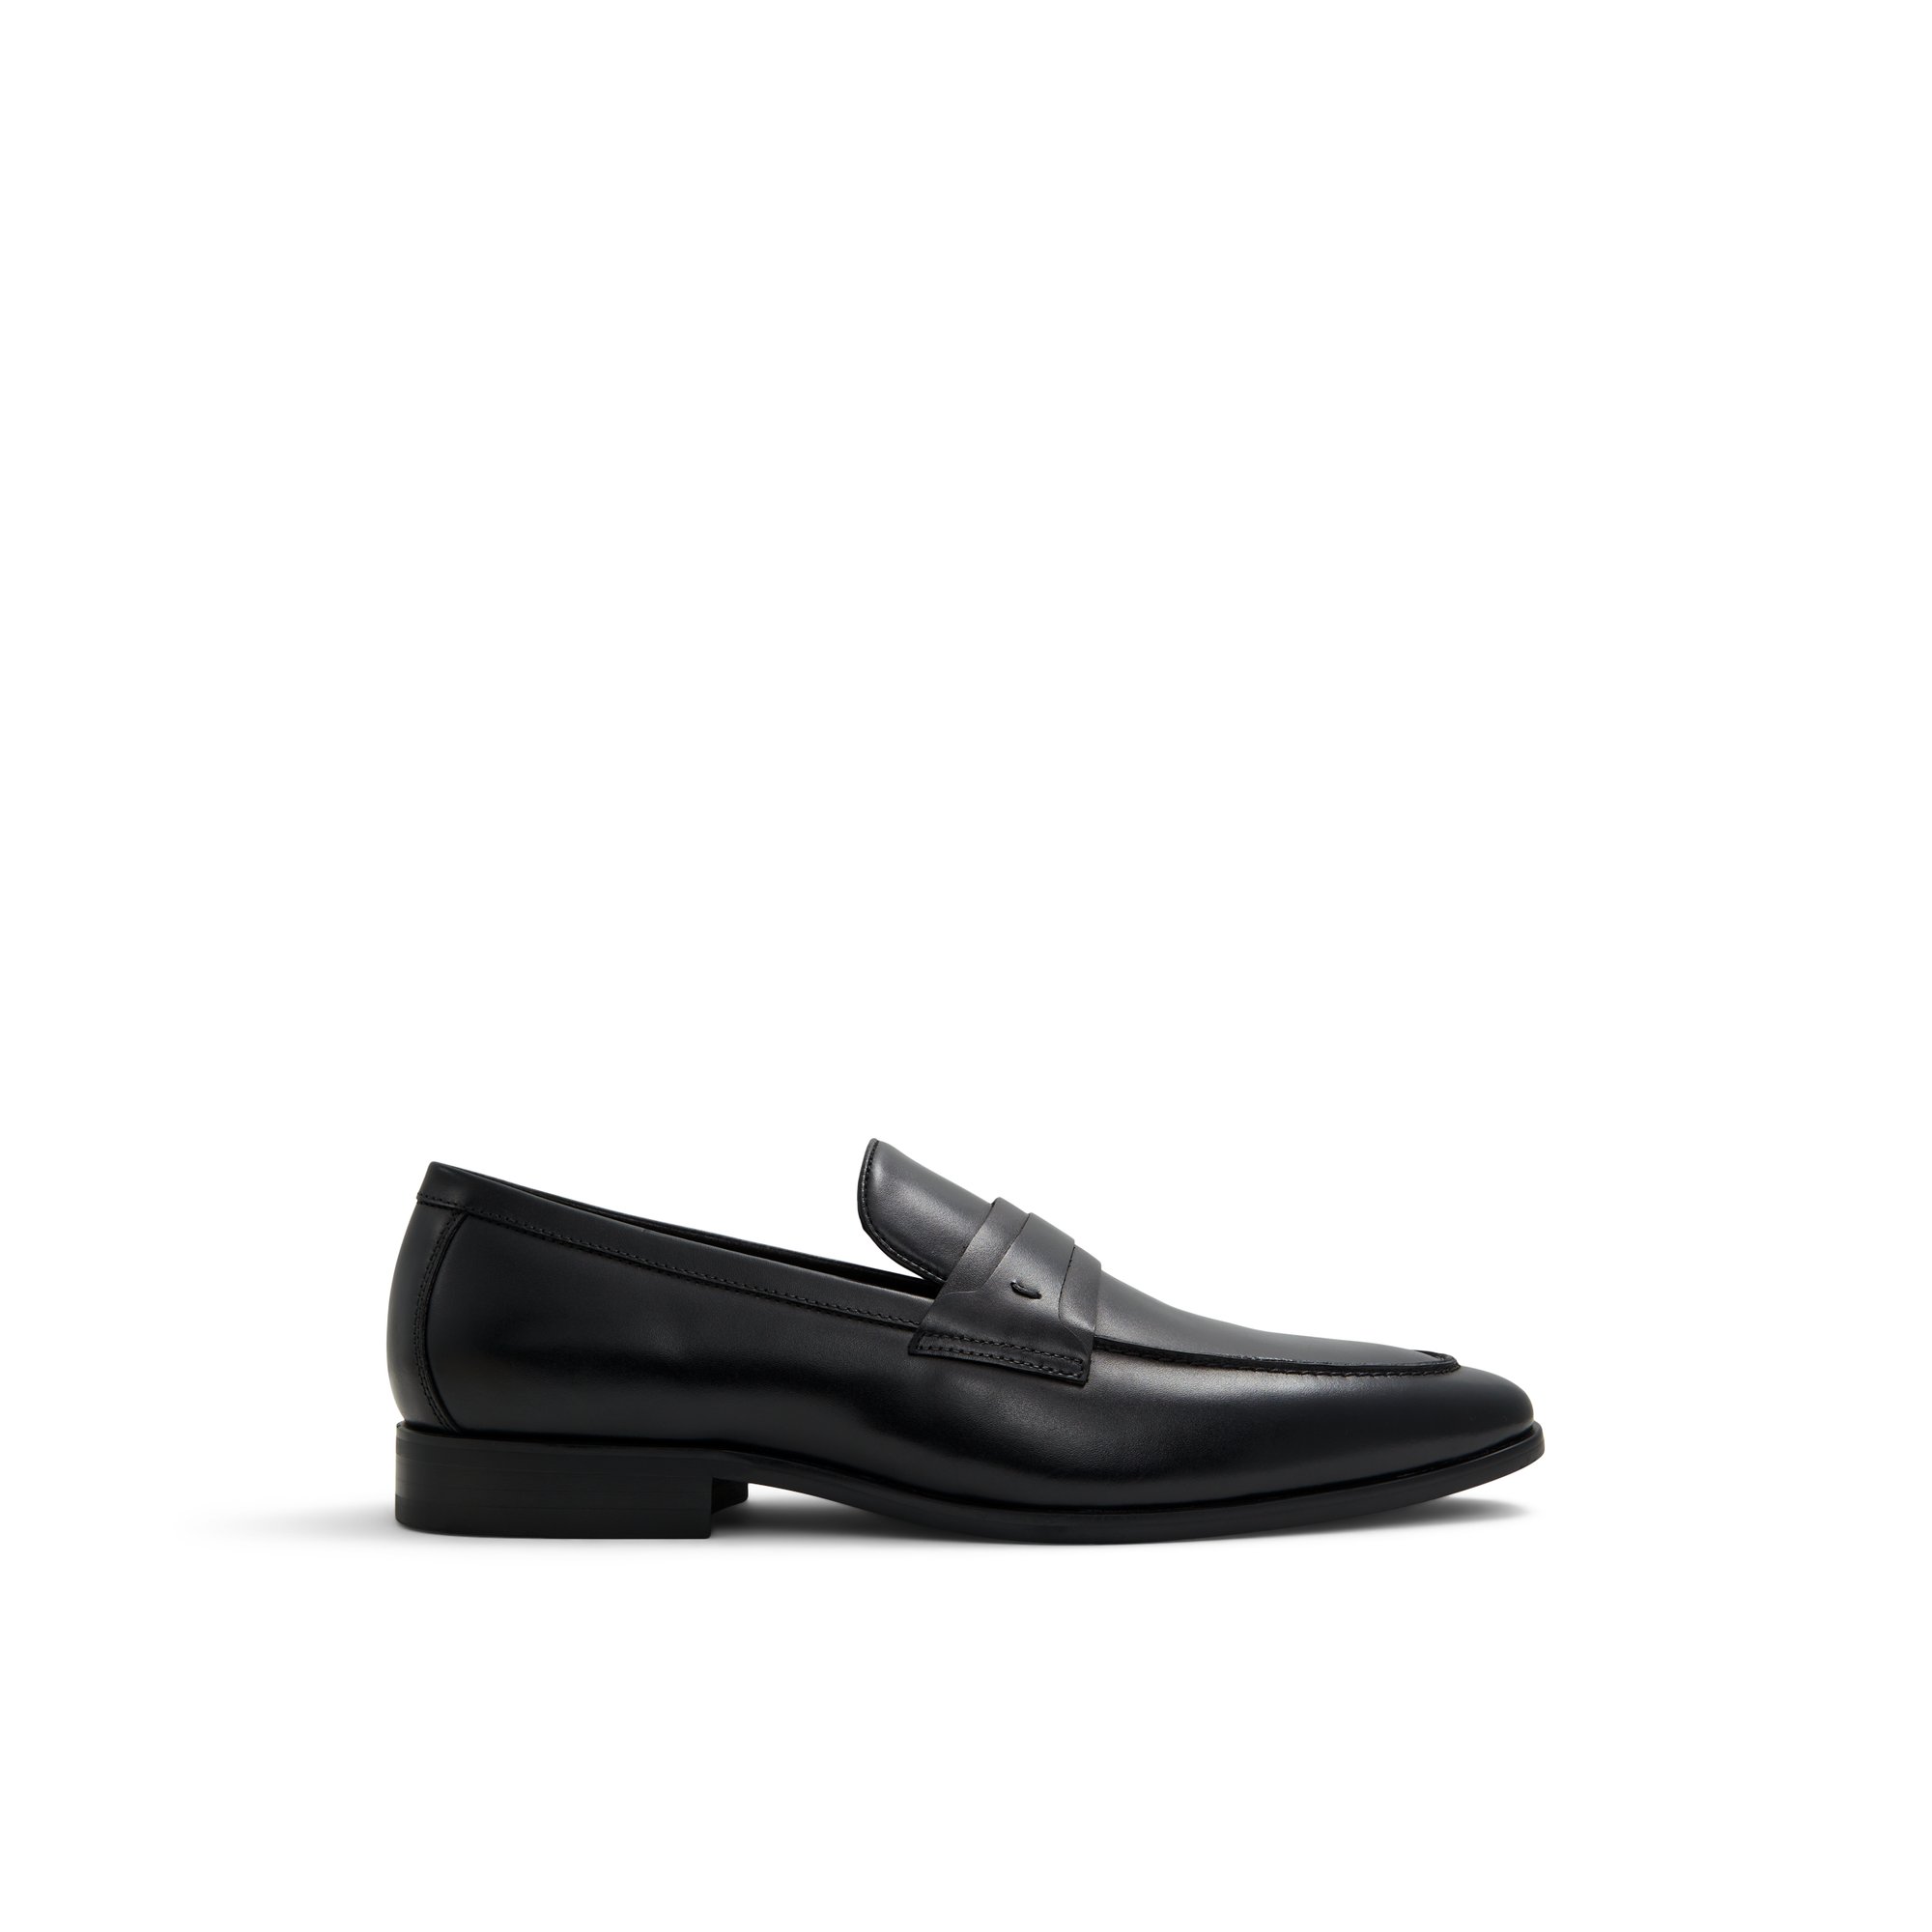 ALDO Ferro - Men's Loafers and Slip on - Black